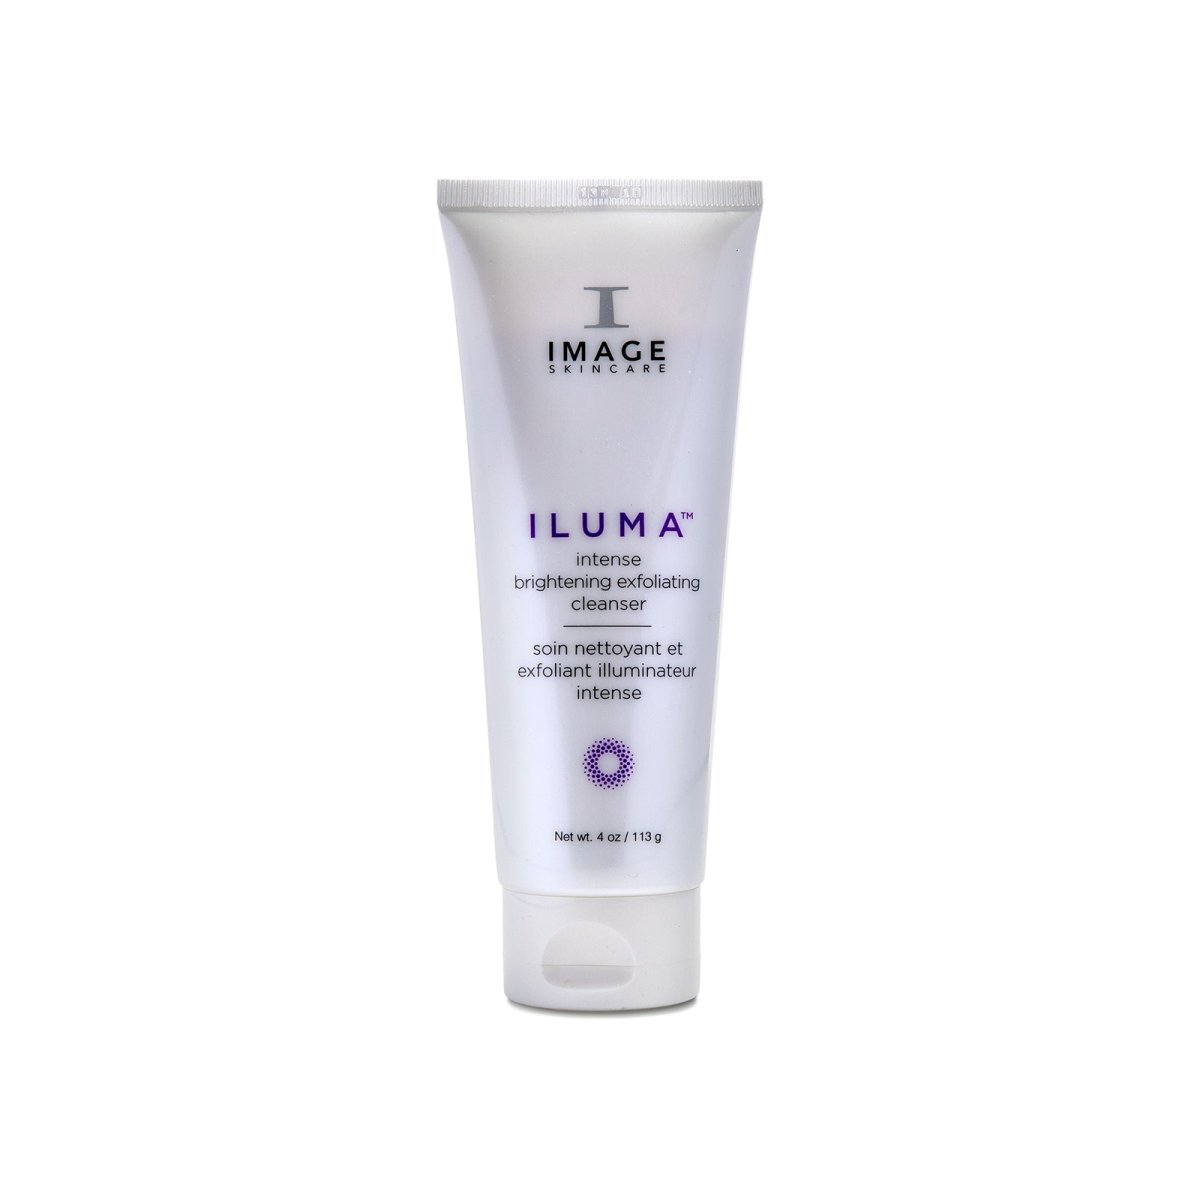 IMAGE Skincare ILUMA™ Intense Brightening Exfoliating Cleanser - SkincareEssentials